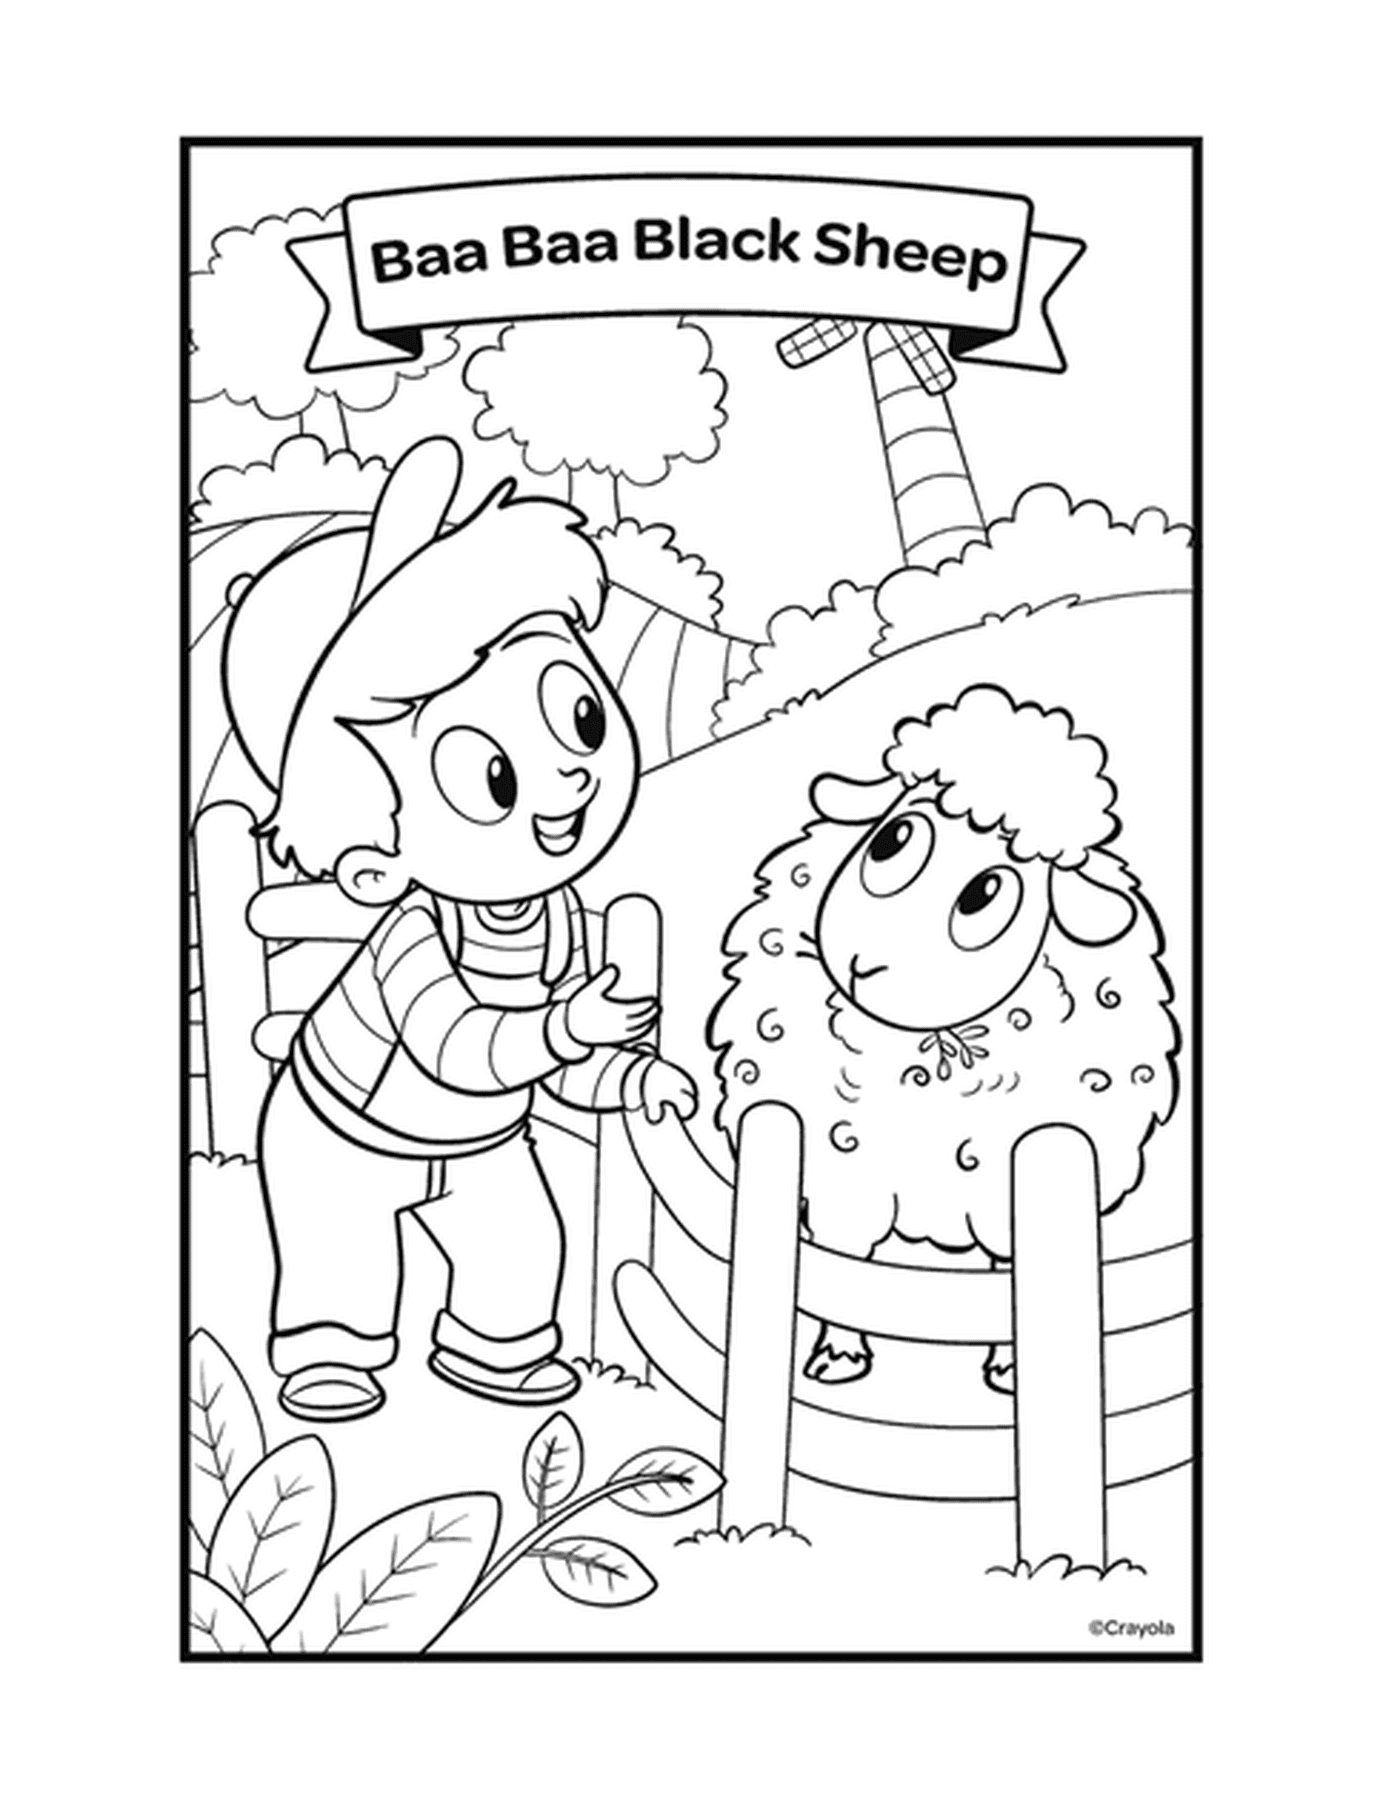  Die Figur Baa Baa Black Sheep mit einem Jungen, der ein Schaf in einem Stift streichelt 